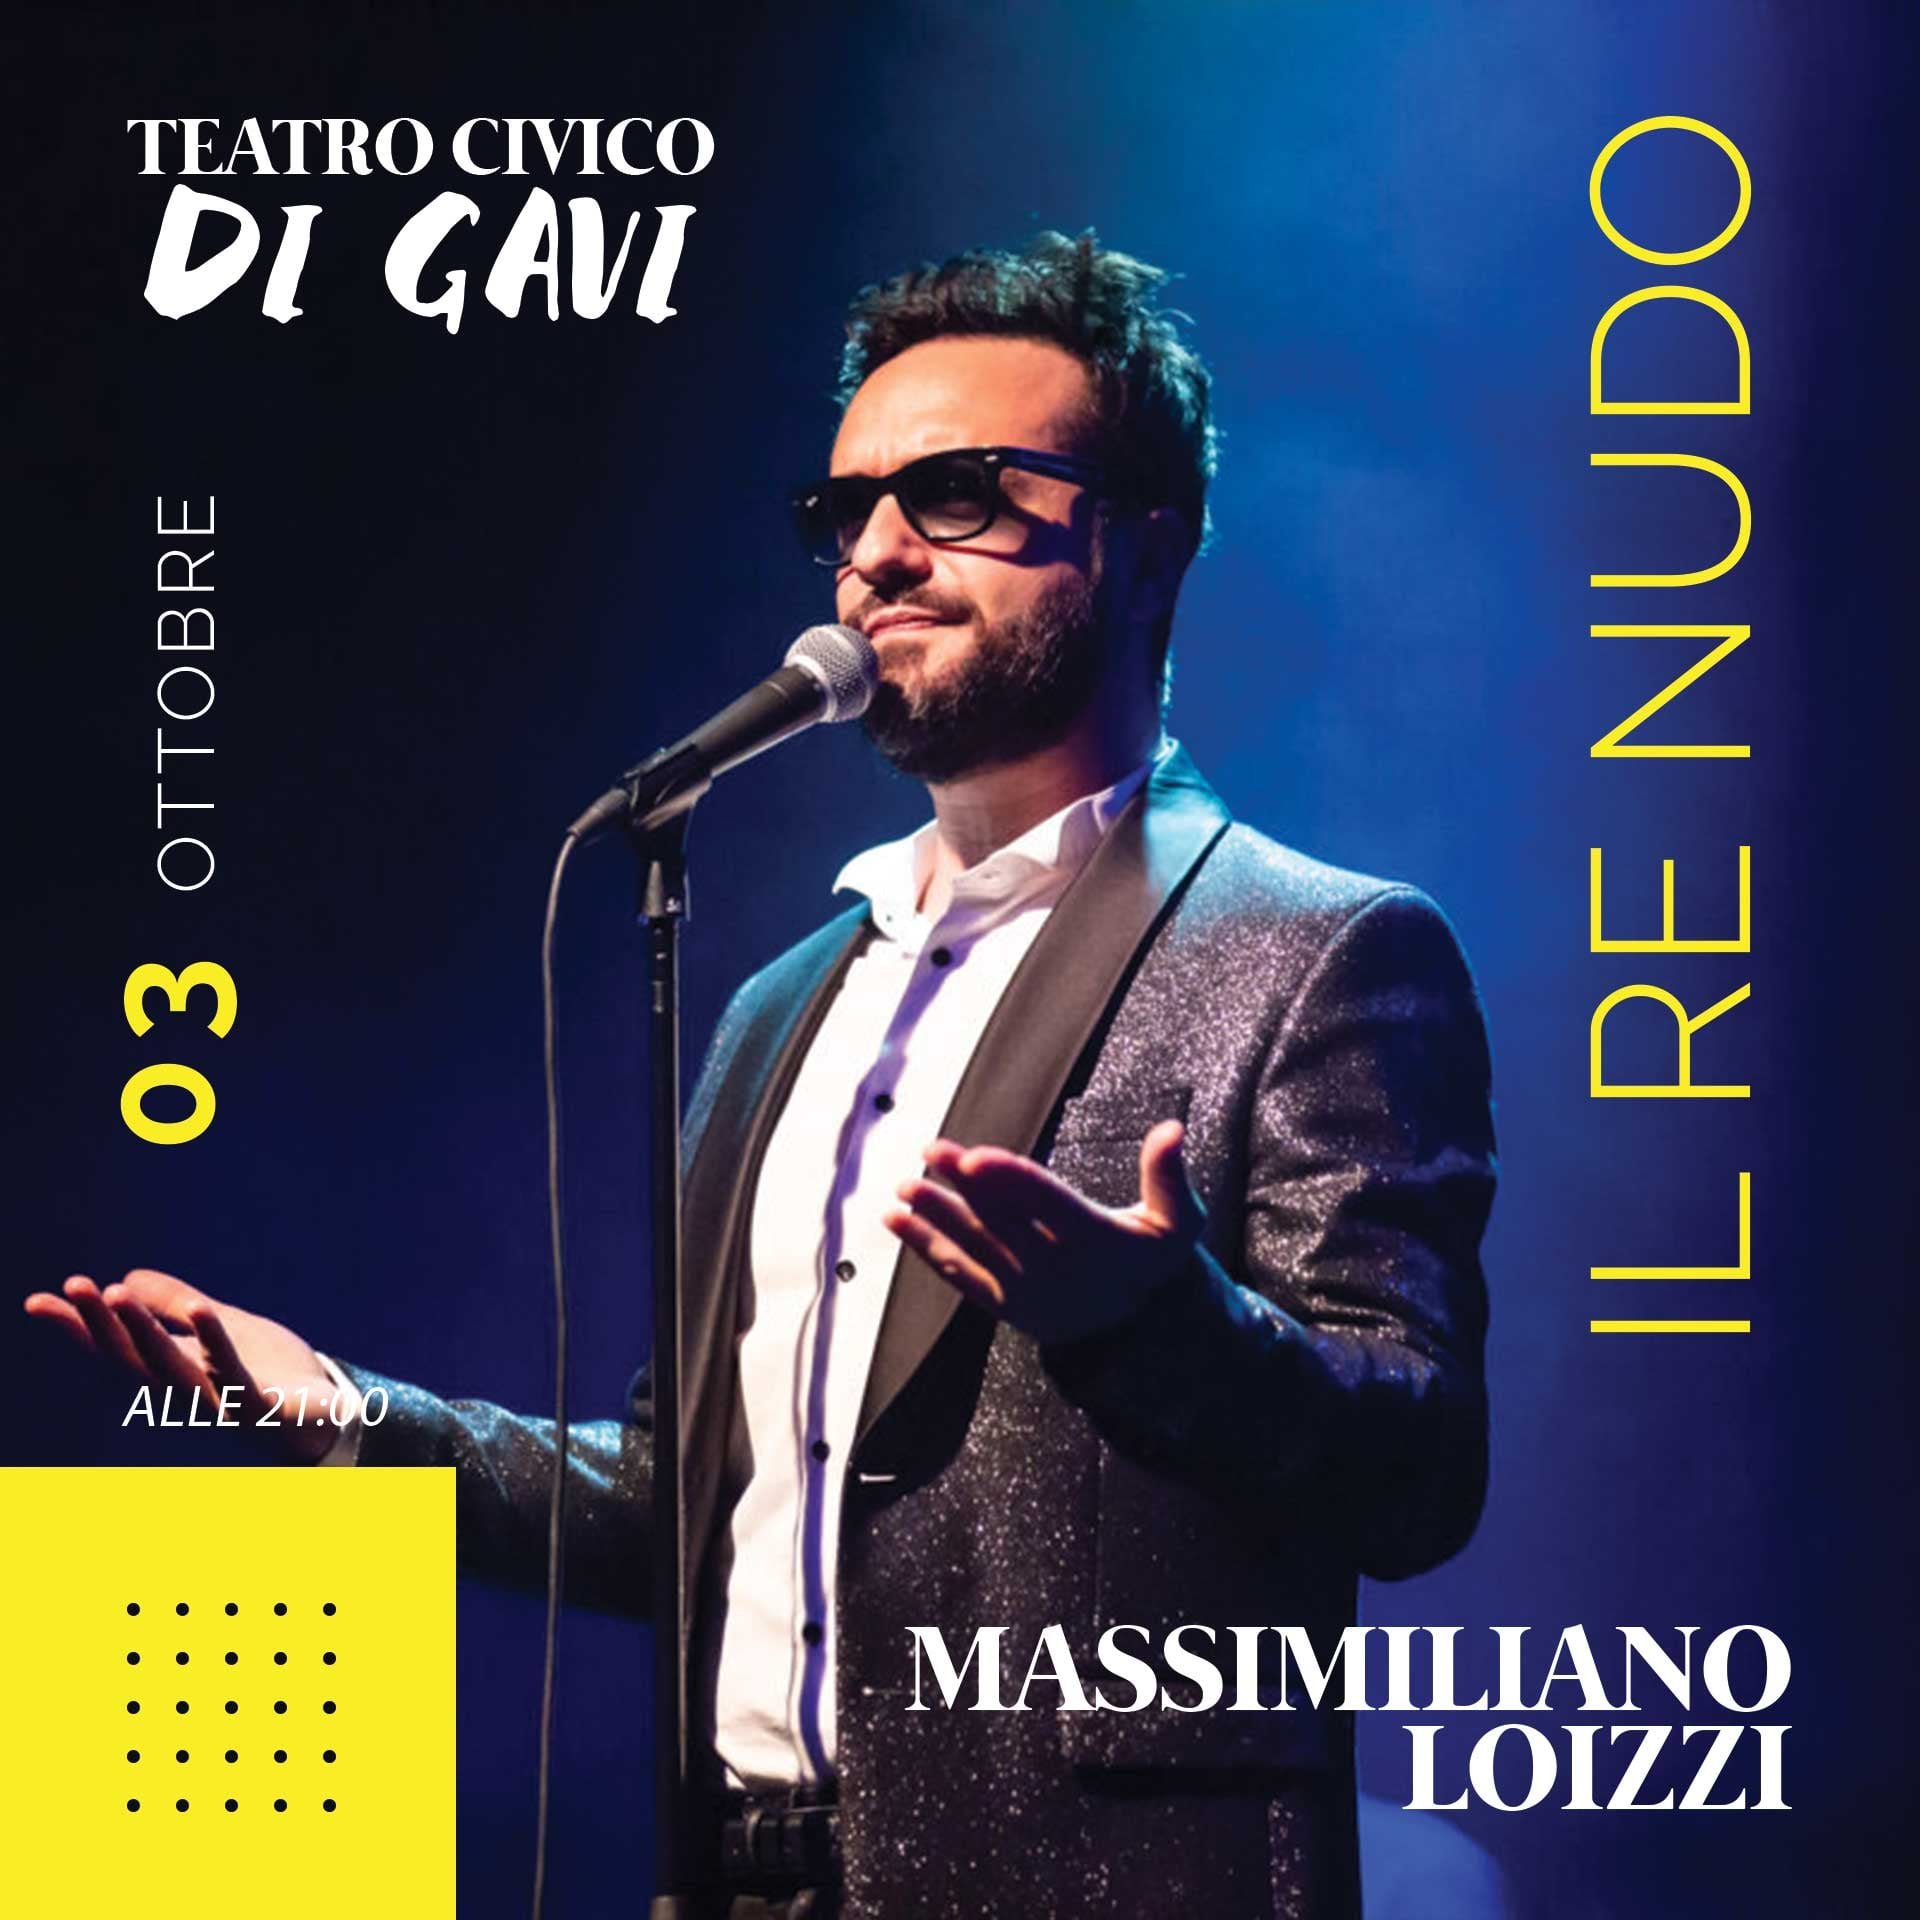 Domenica 3 ottobre al Teatro Civico di Gavi “Il re nudo” di Massimiliano Loizzi